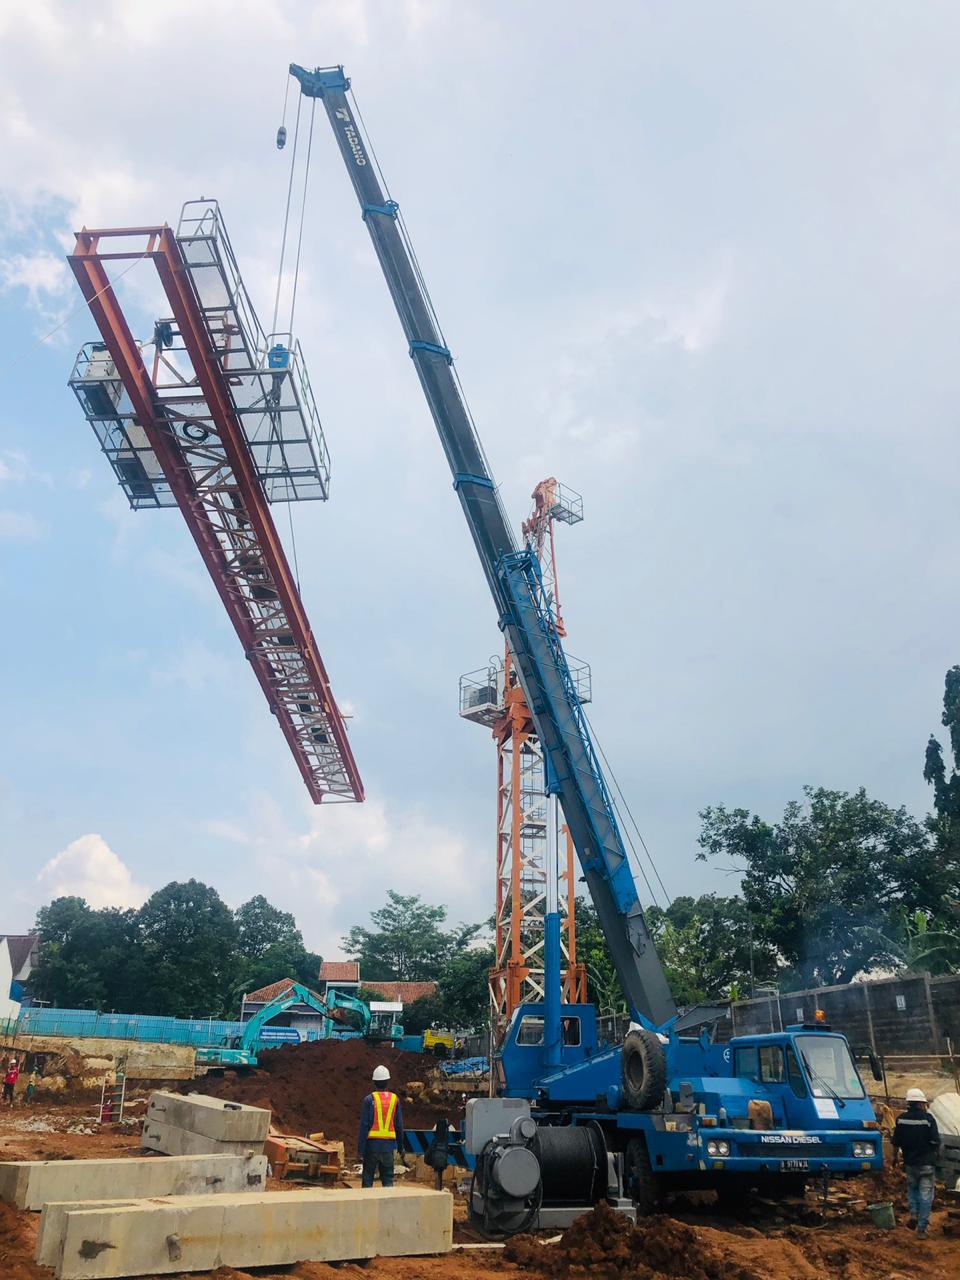 Sewa Crane Semarang, Rental Crane Semarang, Sewa Crane Semarang, Persewaan Crane Semarang